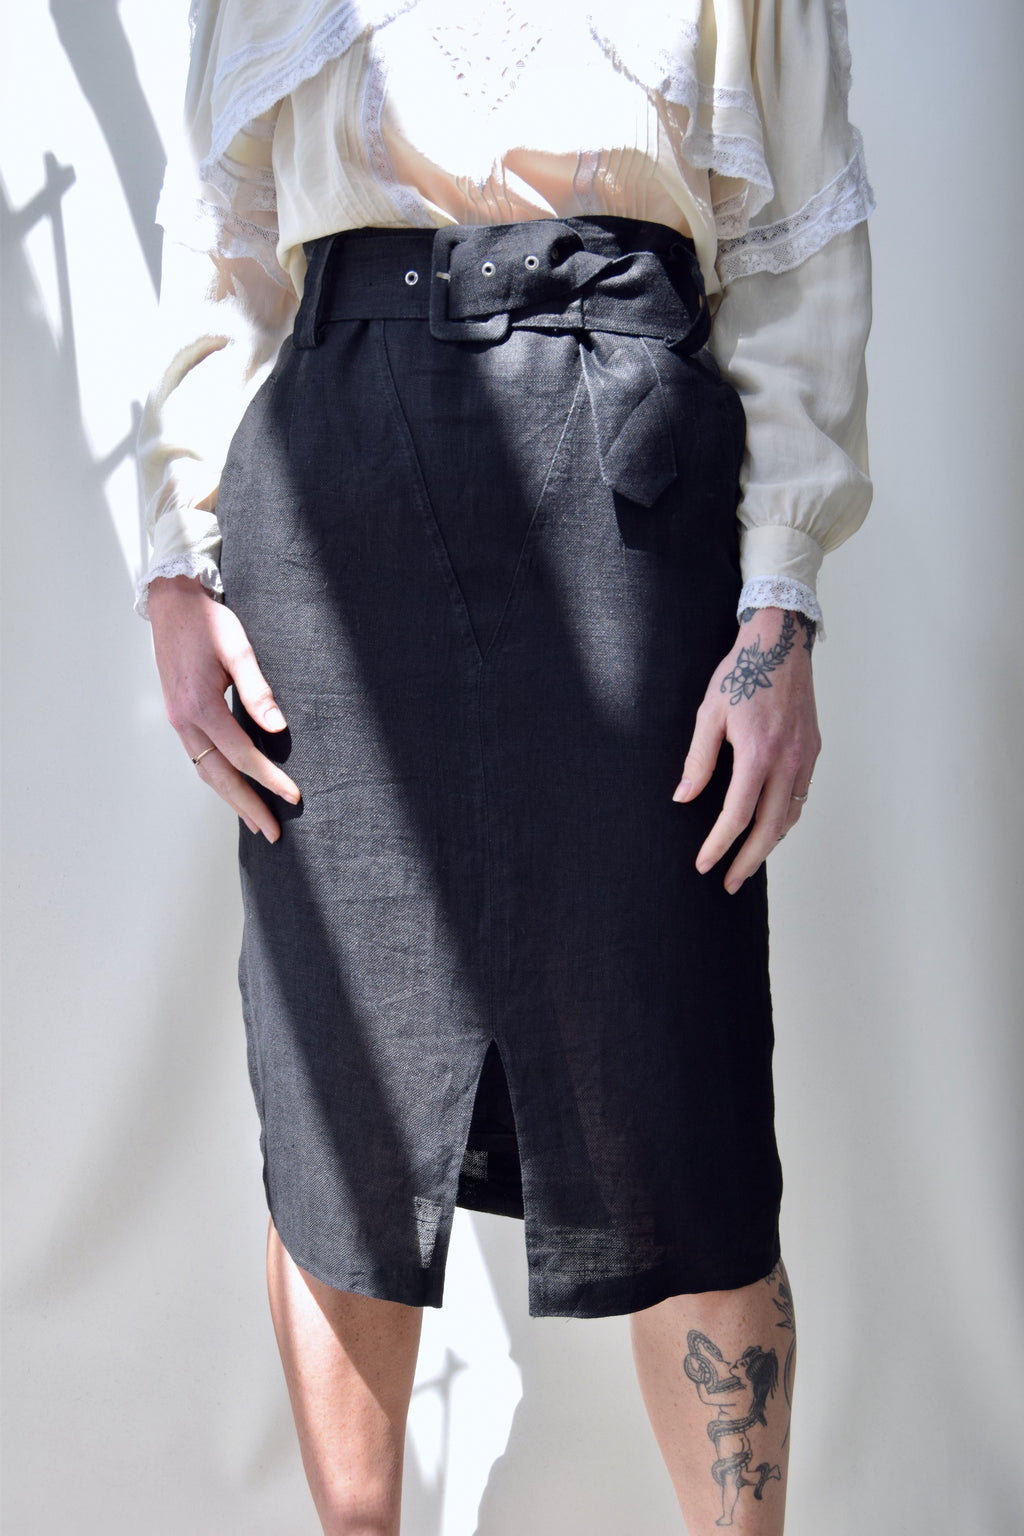 Belted Linen Pencil Skirt